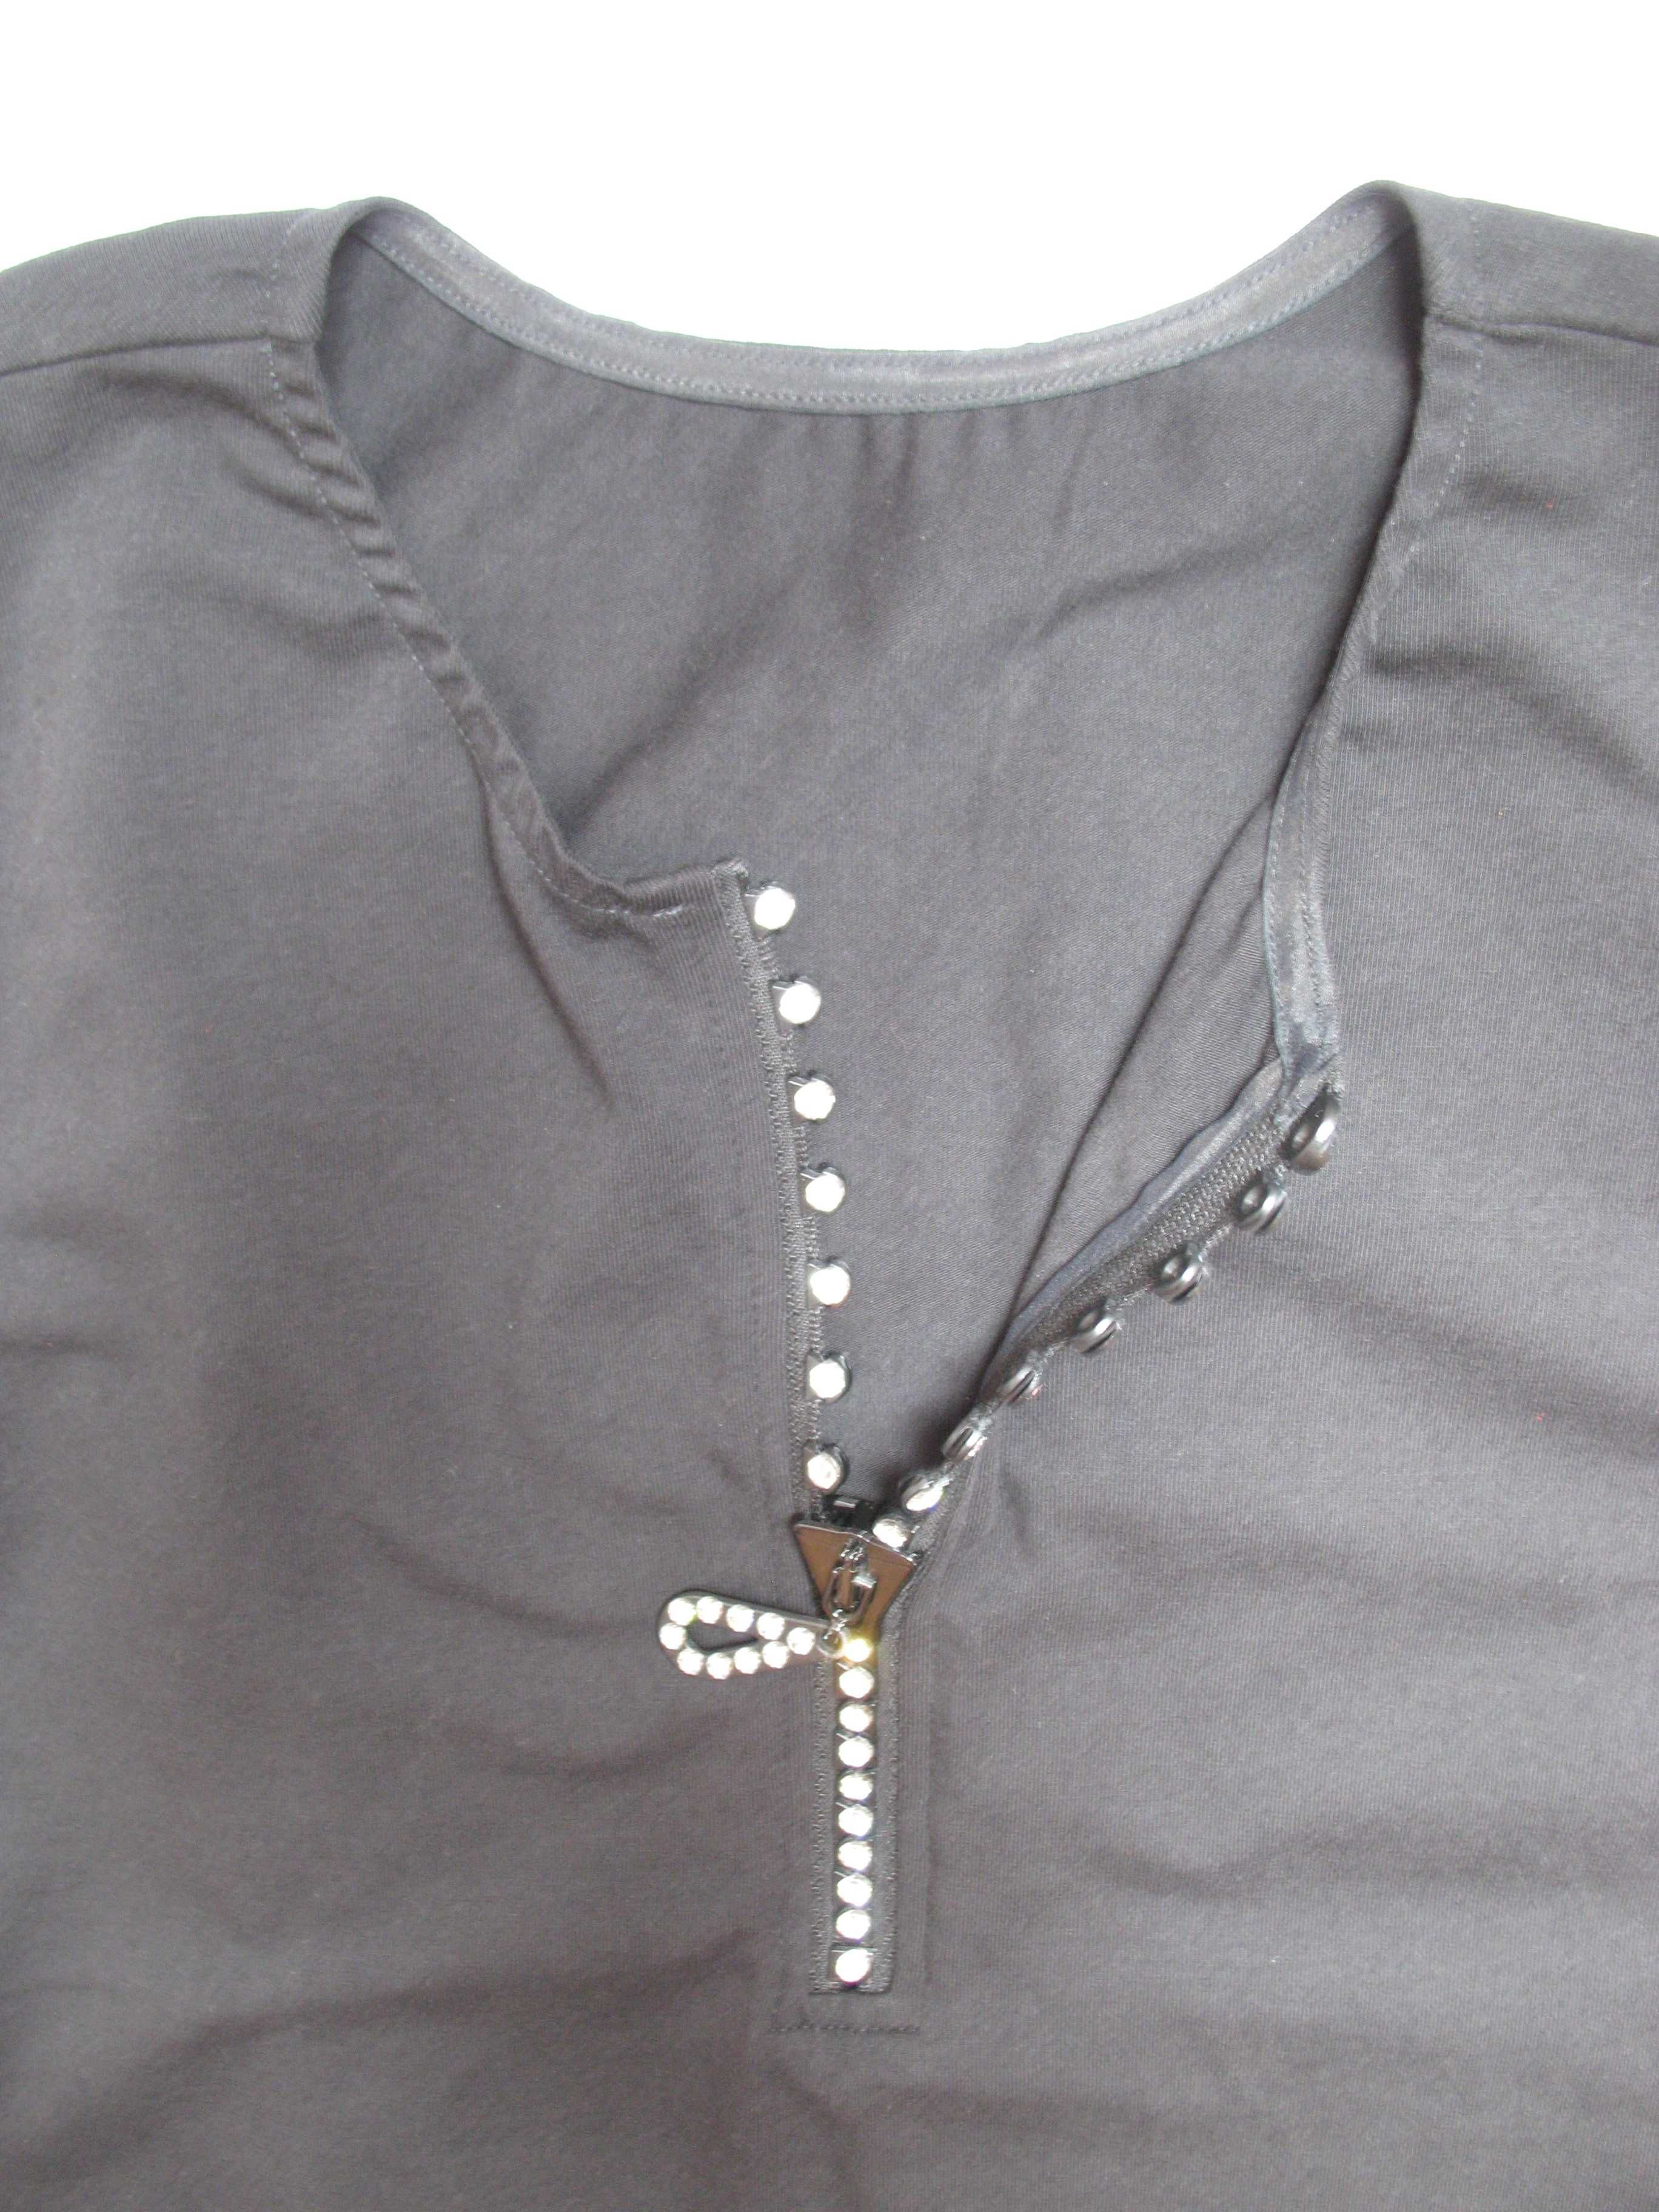 Платье М спортивное моделирующее черное эластан декор молния Сваровски